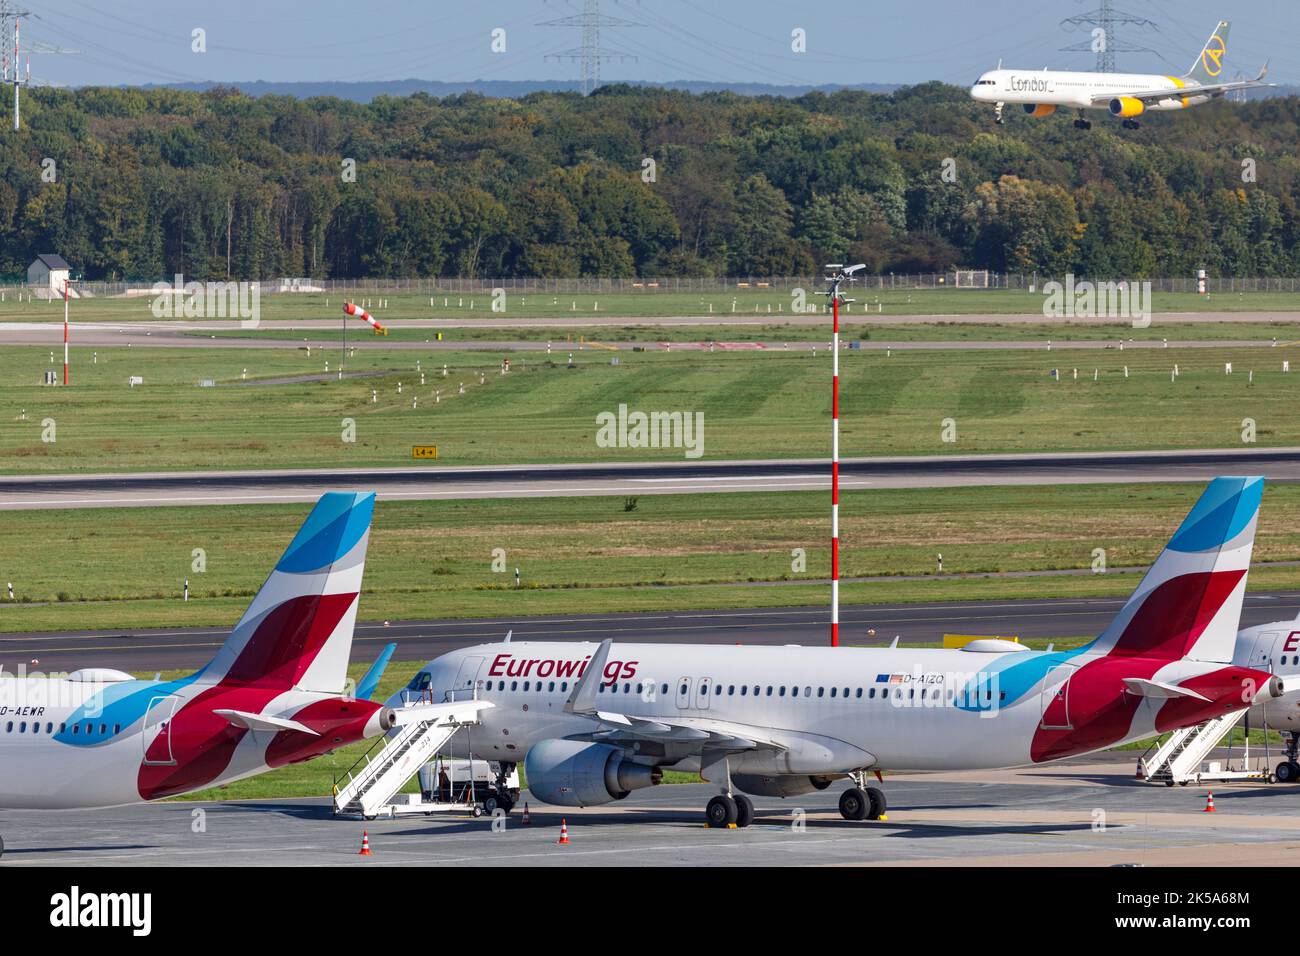 Aeroporto di Düsseldorf - aeromobile Eurowings in posizione di parcheggio durante lo sciopero dei piloti, aeromobile passeggeri Condor in avvicinamento per l'atterraggio Foto Stock